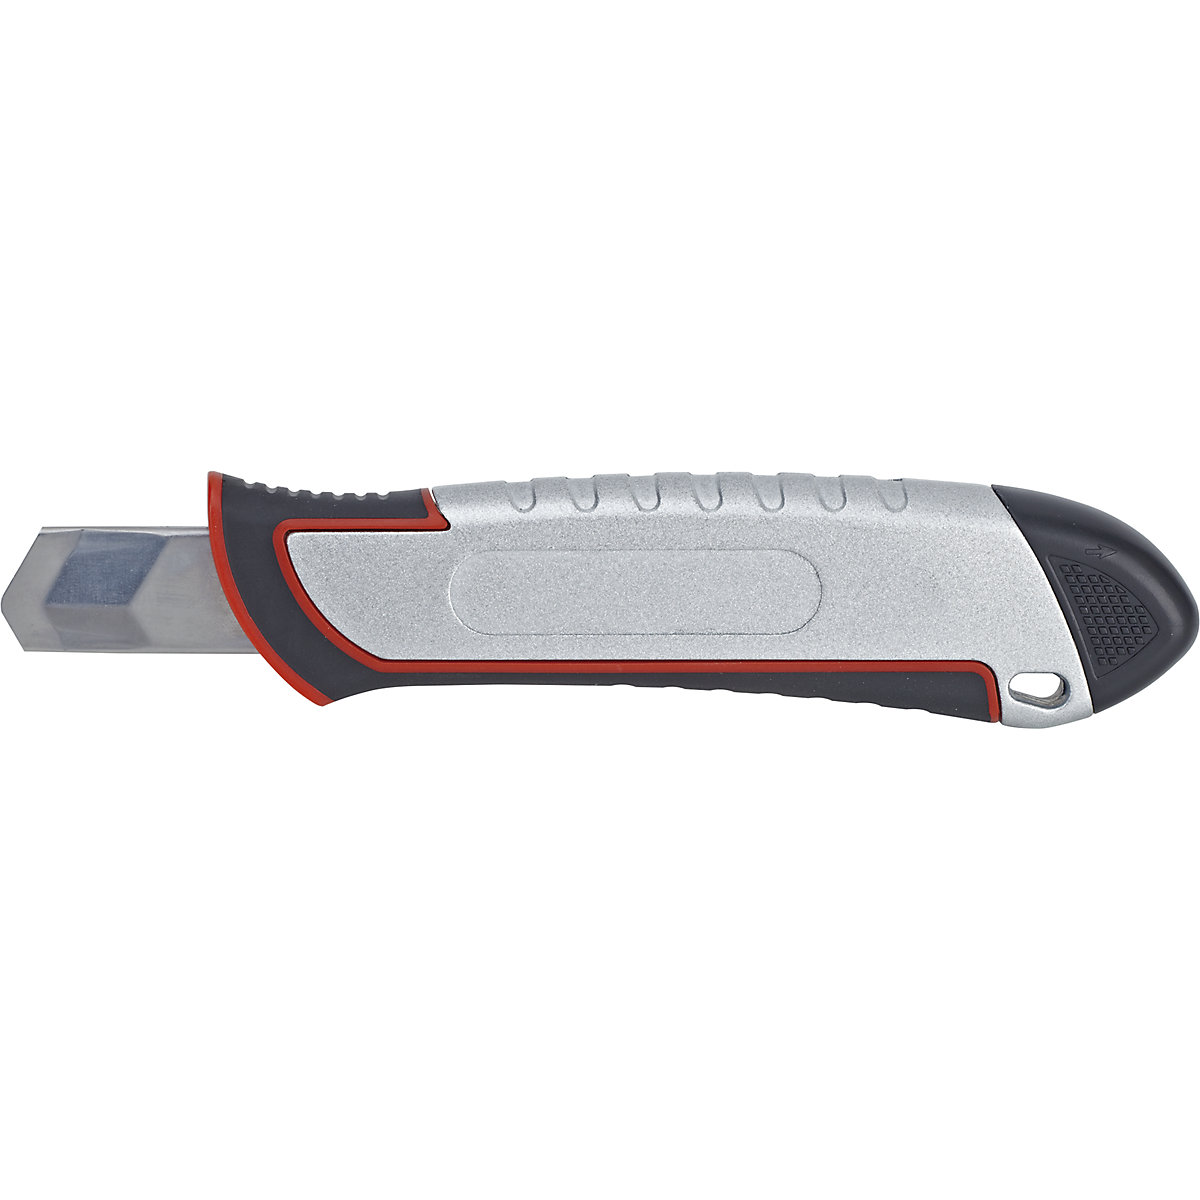 Bezpieczny nóż – MAUL (Zdjęcie produktu 2)-1